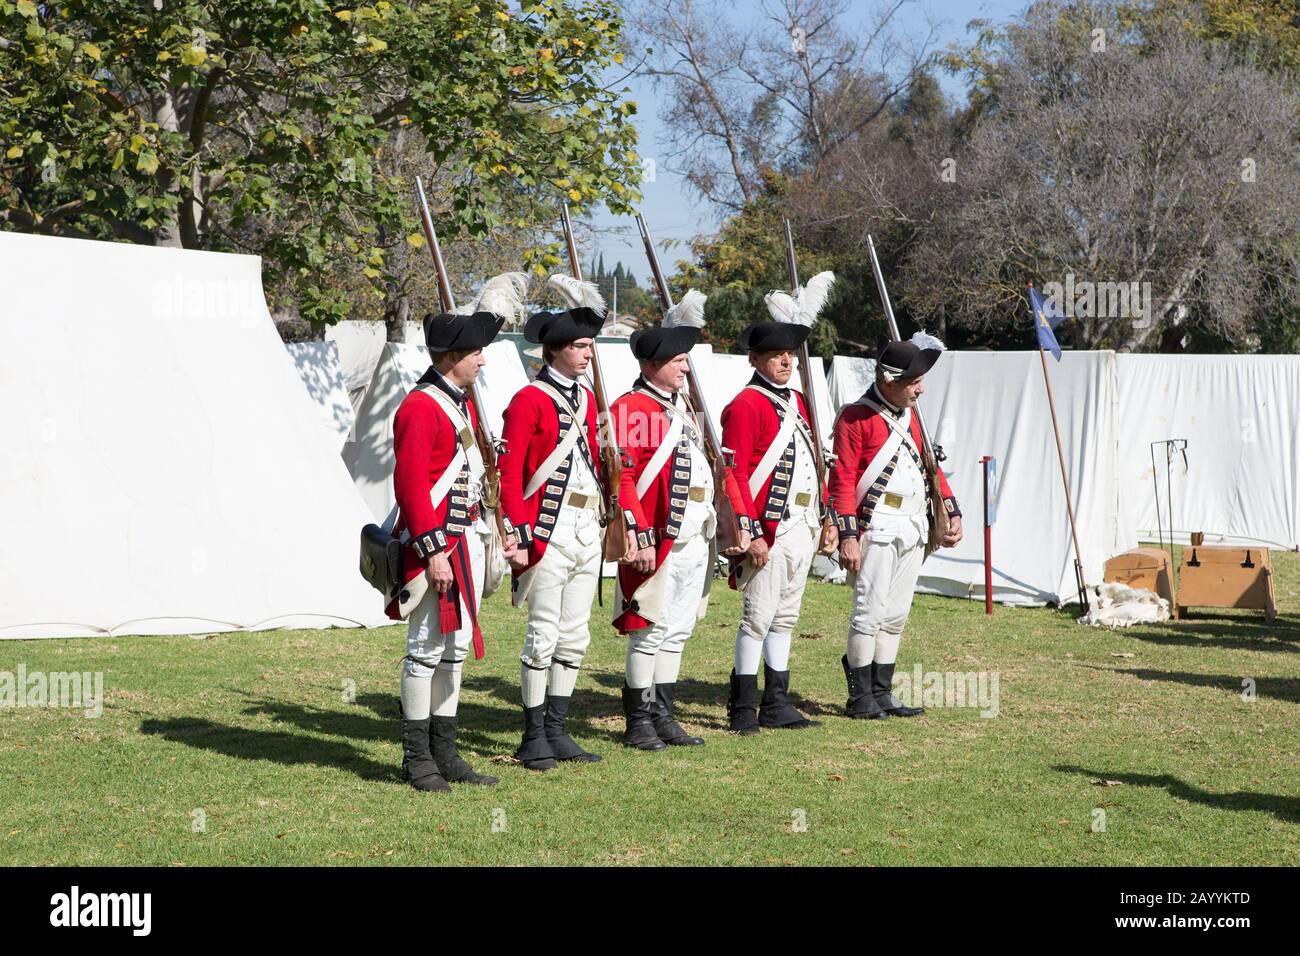 Soldati britannici di redcoat durante una rievocazione della rivoluzione americana nel 'Huntington Central Park' Huntington Beach California USA Foto Stock